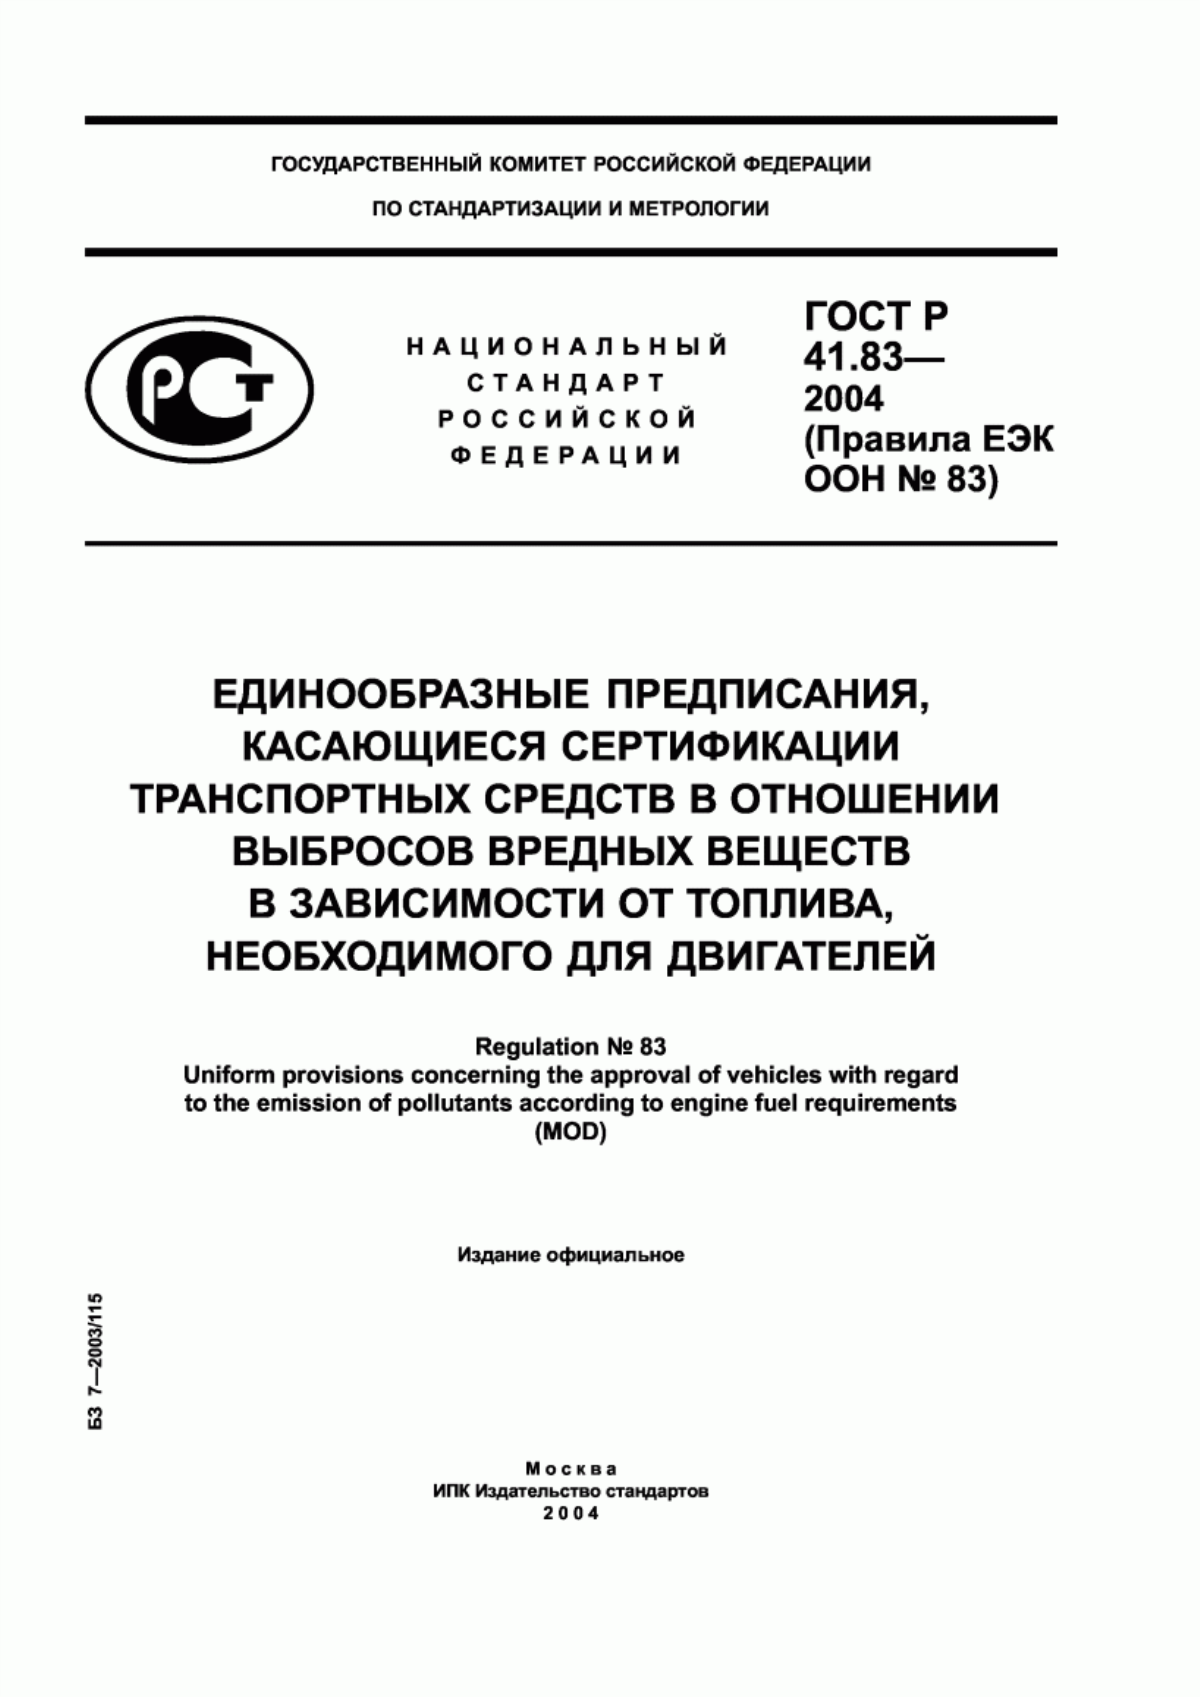 ГОСТ Р 41.83-2004 Единообразные предписания, касающиеся сертификации транспортных средств в отношении выбросов вредных веществ в зависимости от топлива, необходимого для двигателей